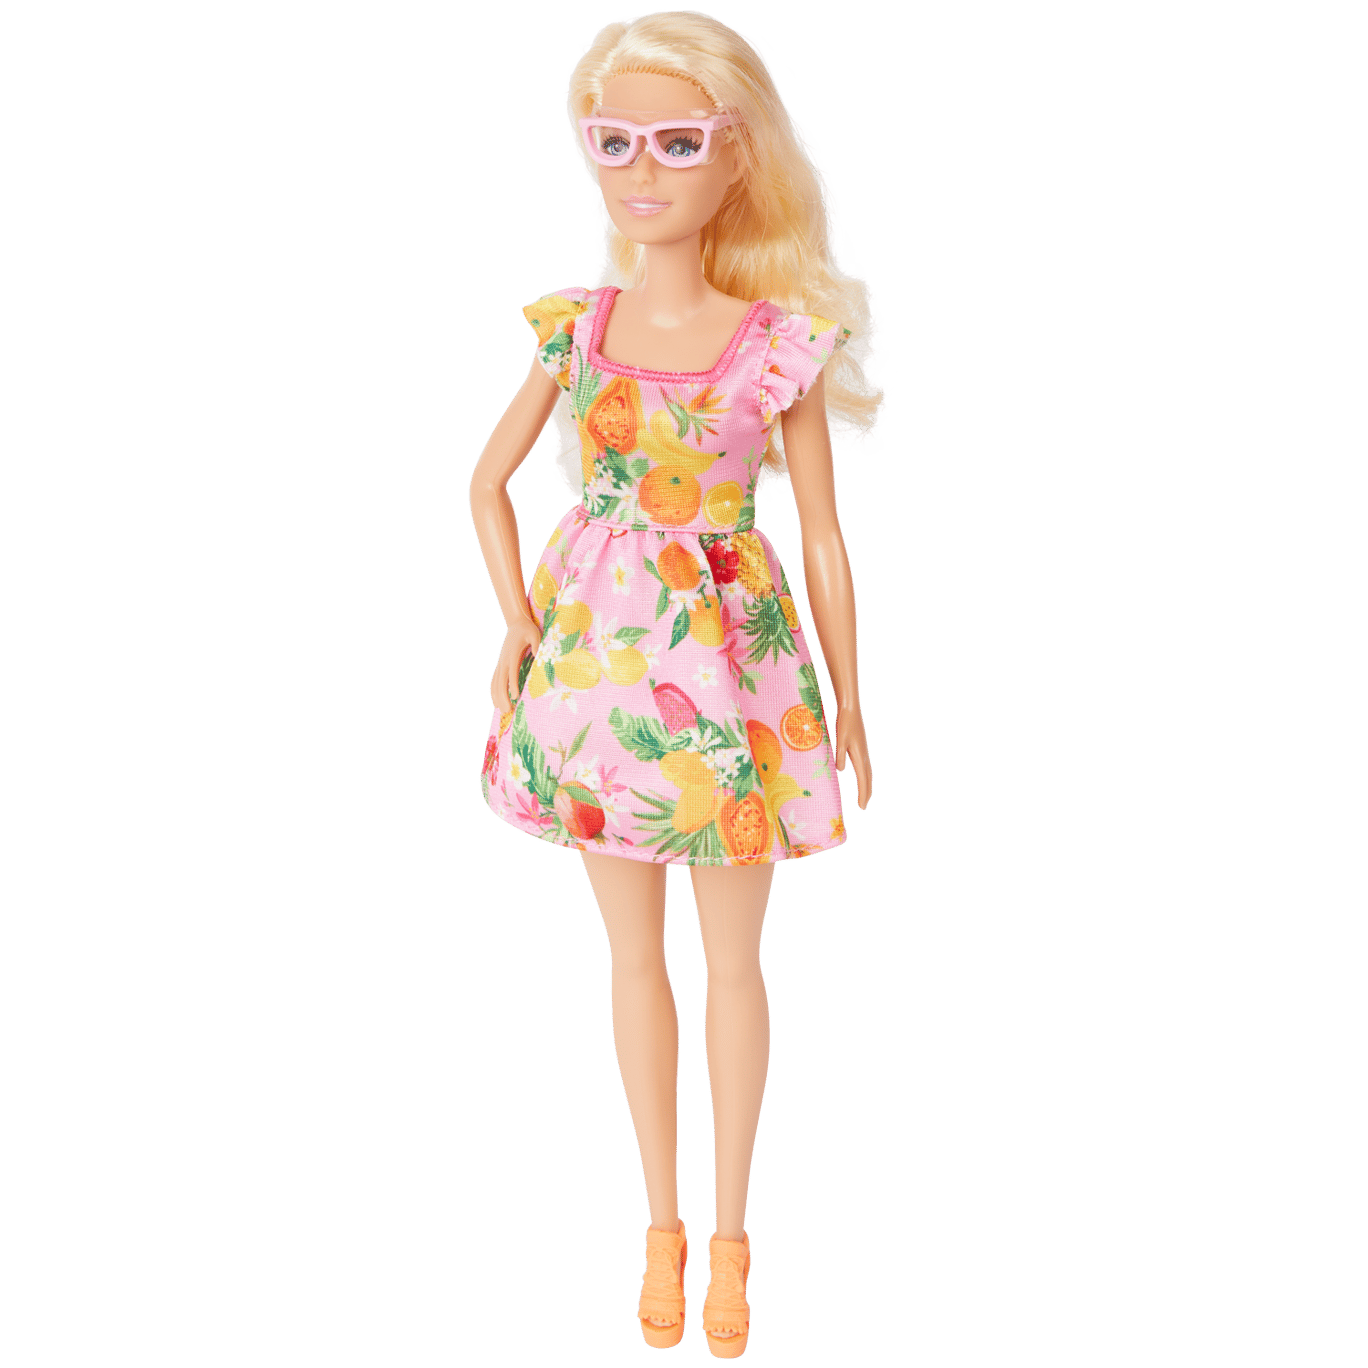 Doelwit aanval Seizoen Barbie Fashionista | Action.com